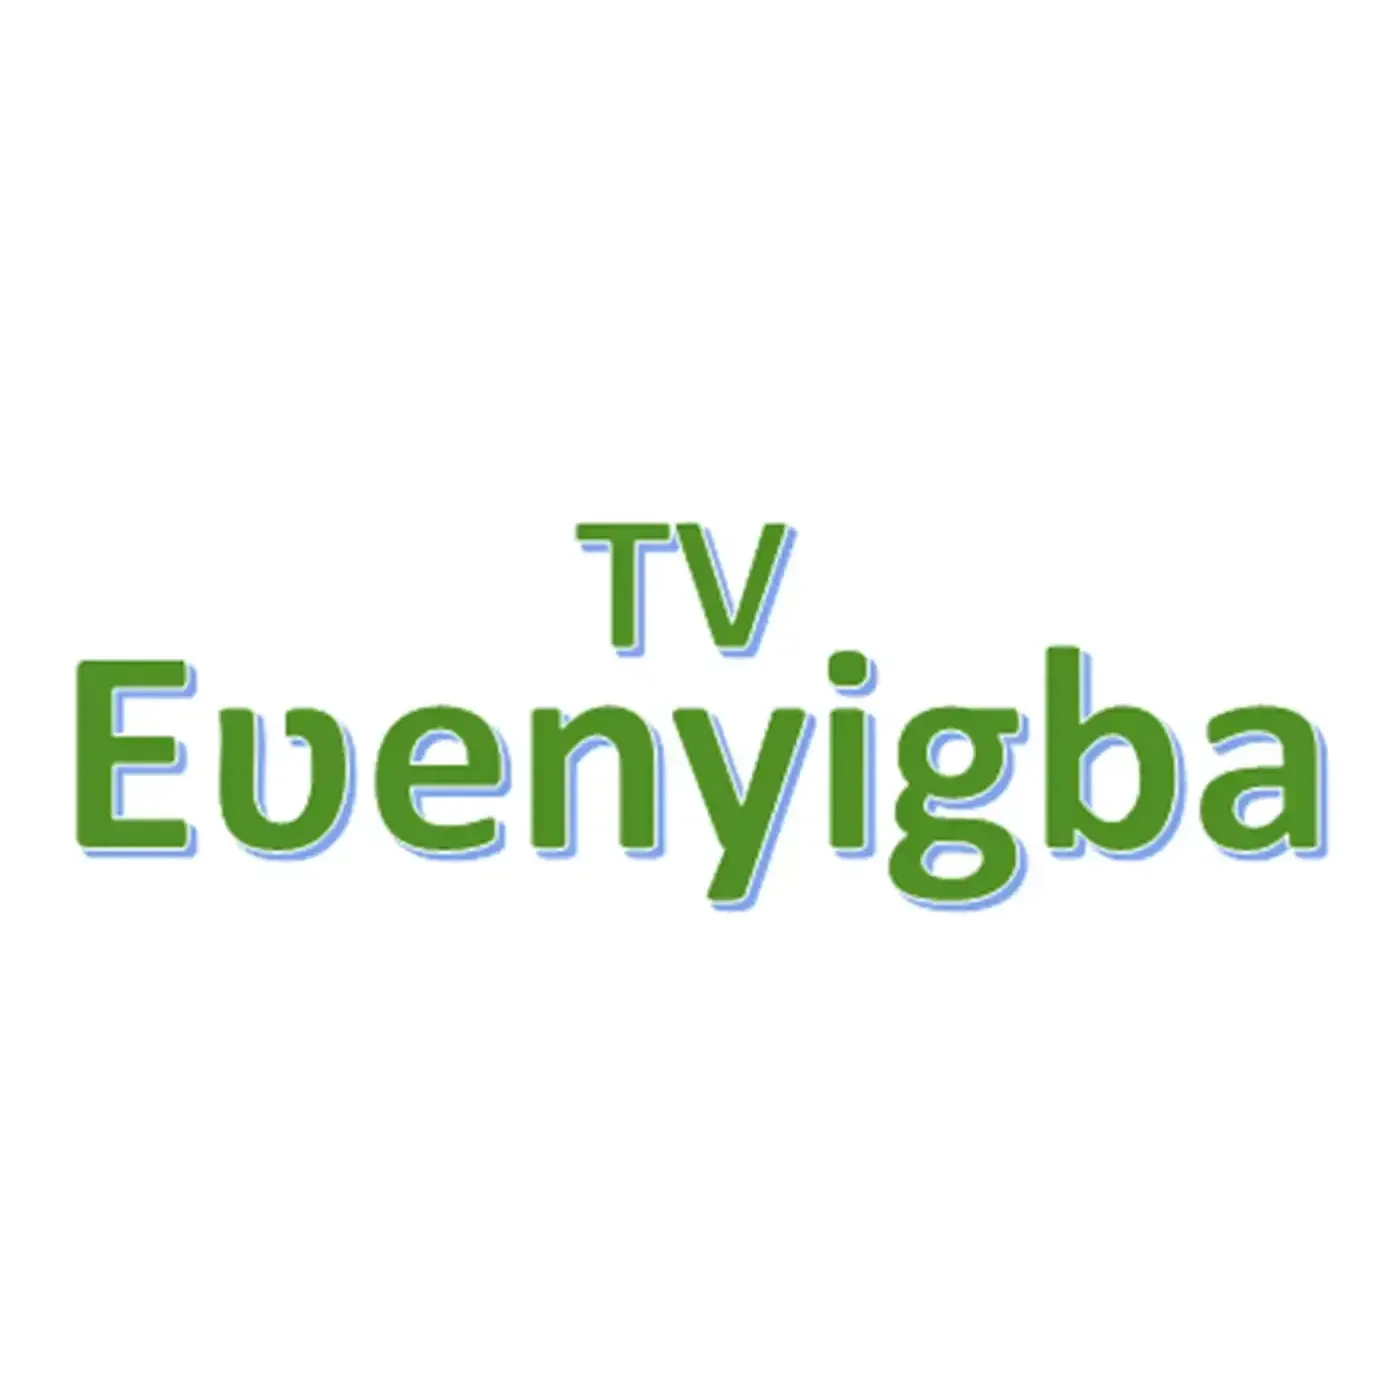 Ewenyigba TV